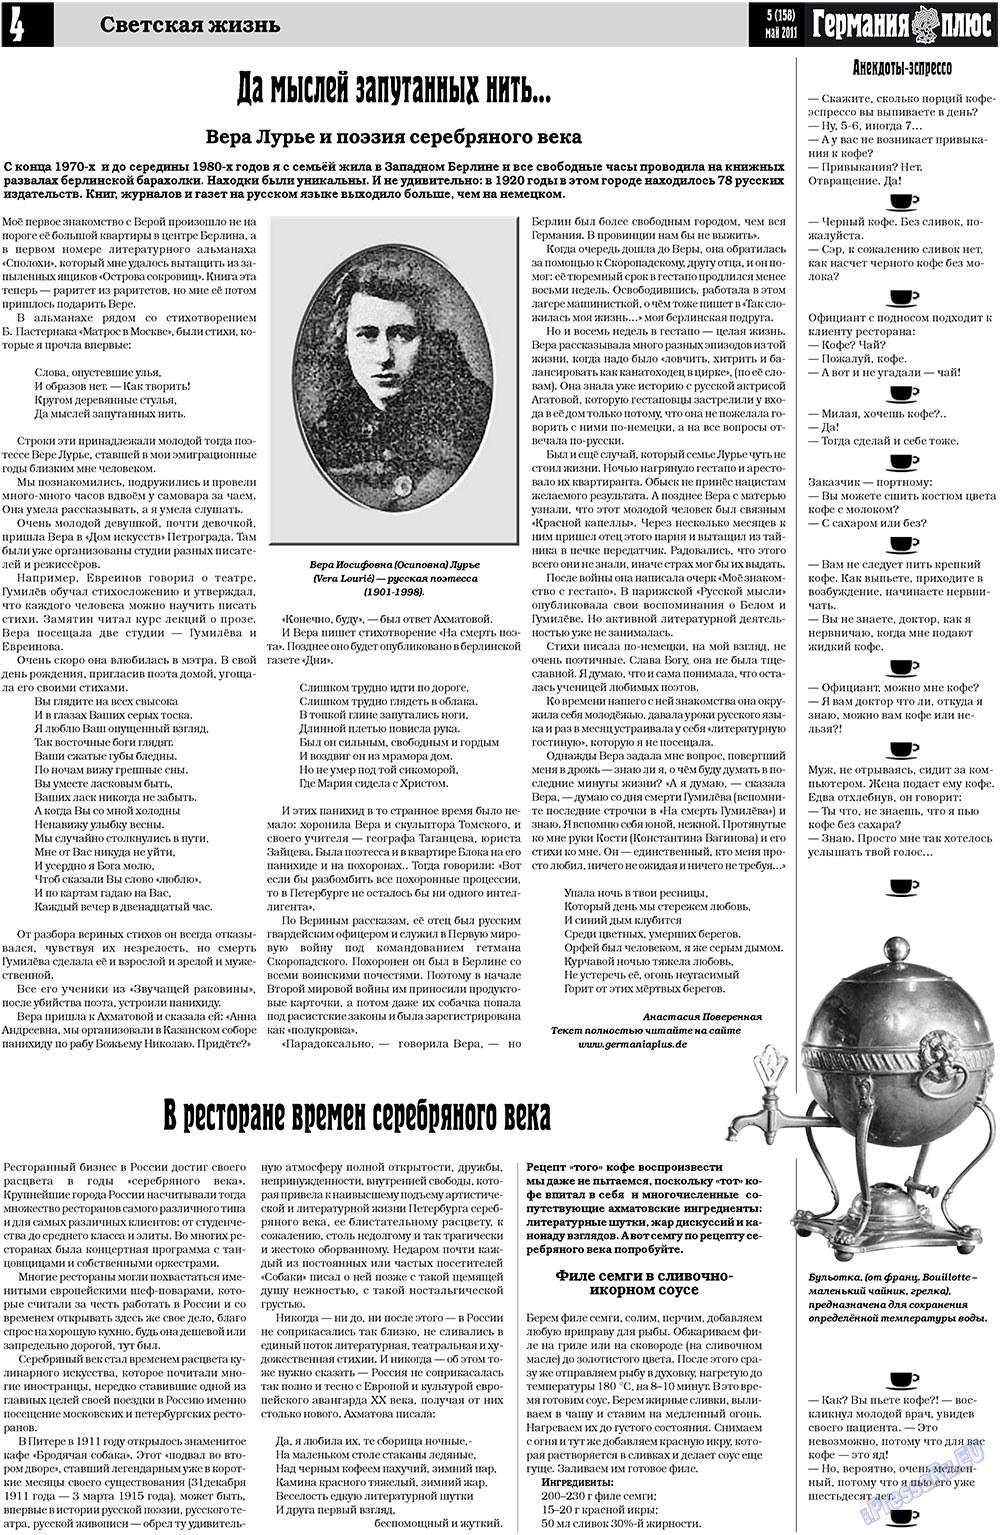 Германия плюс (газета). 2011 год, номер 5, стр. 4